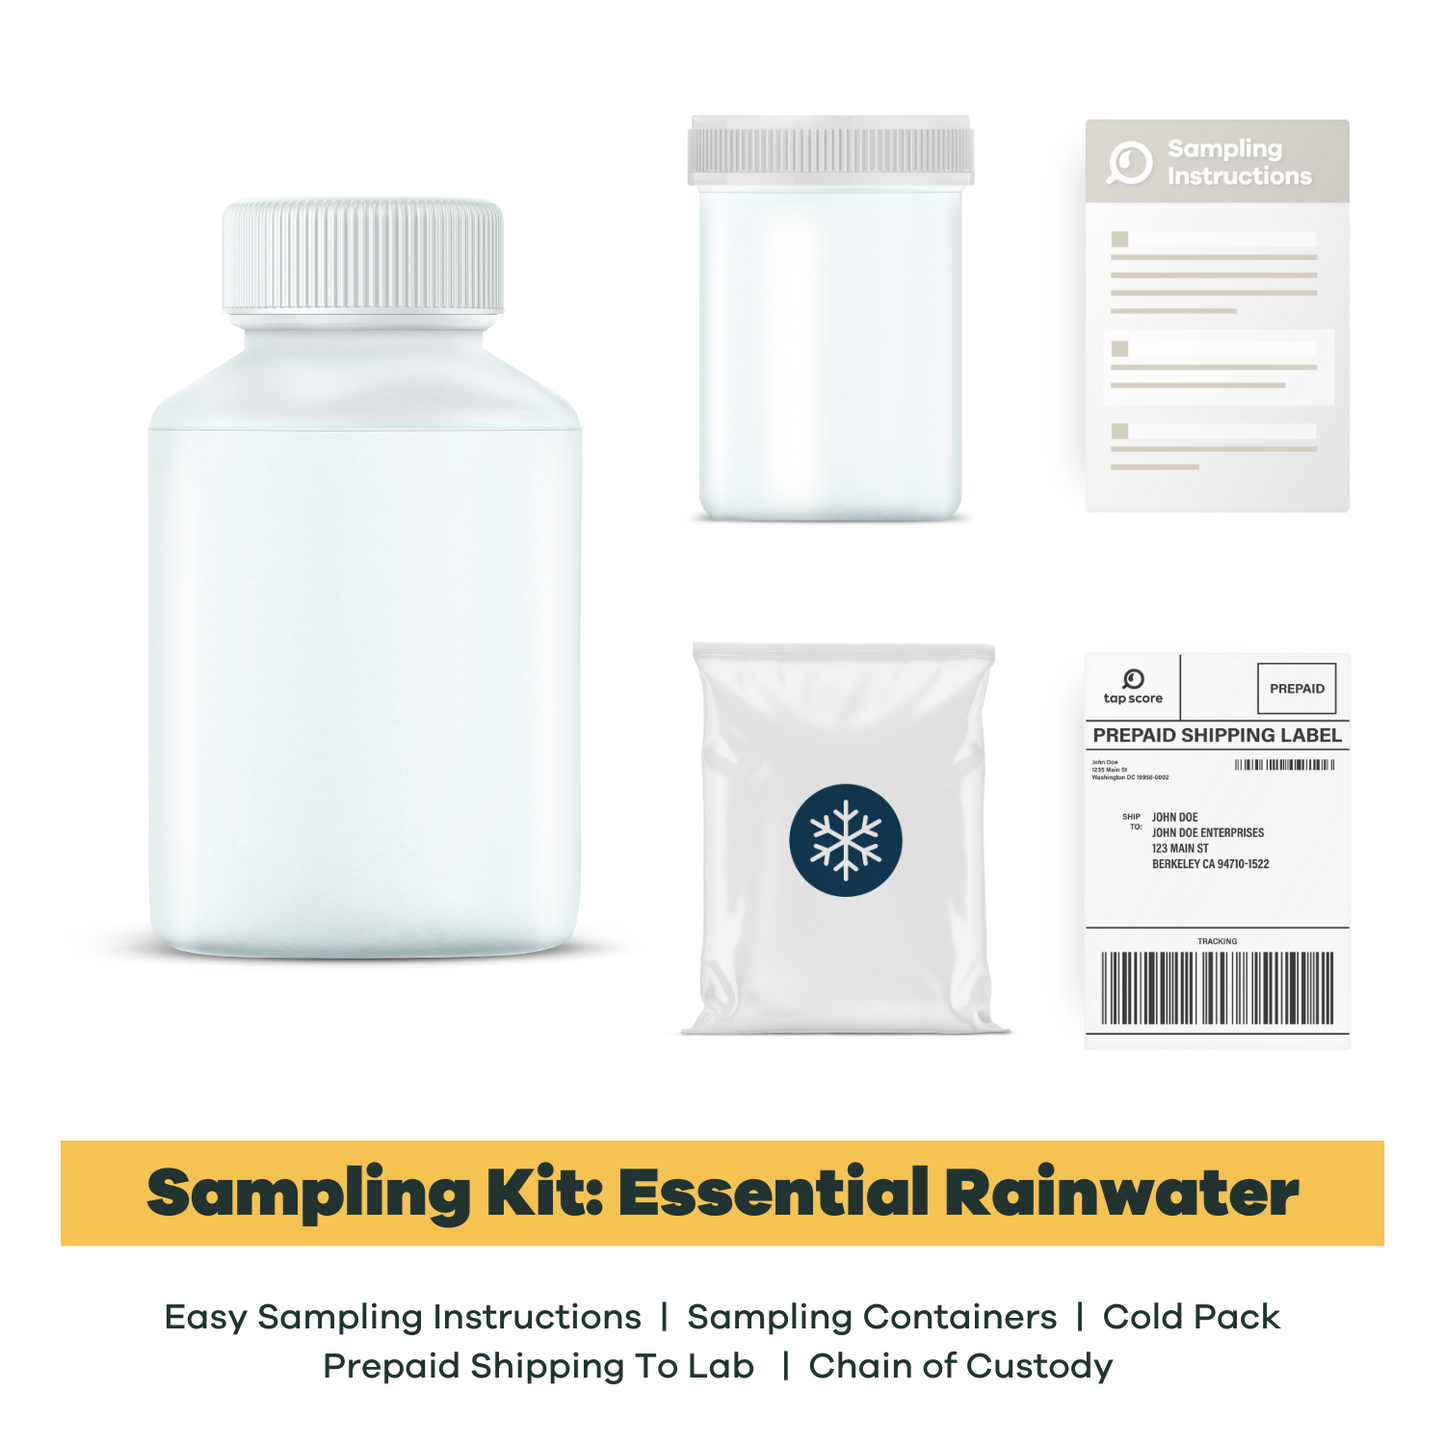 Essential Rainwater Sampling Materials for Laboratory Testing